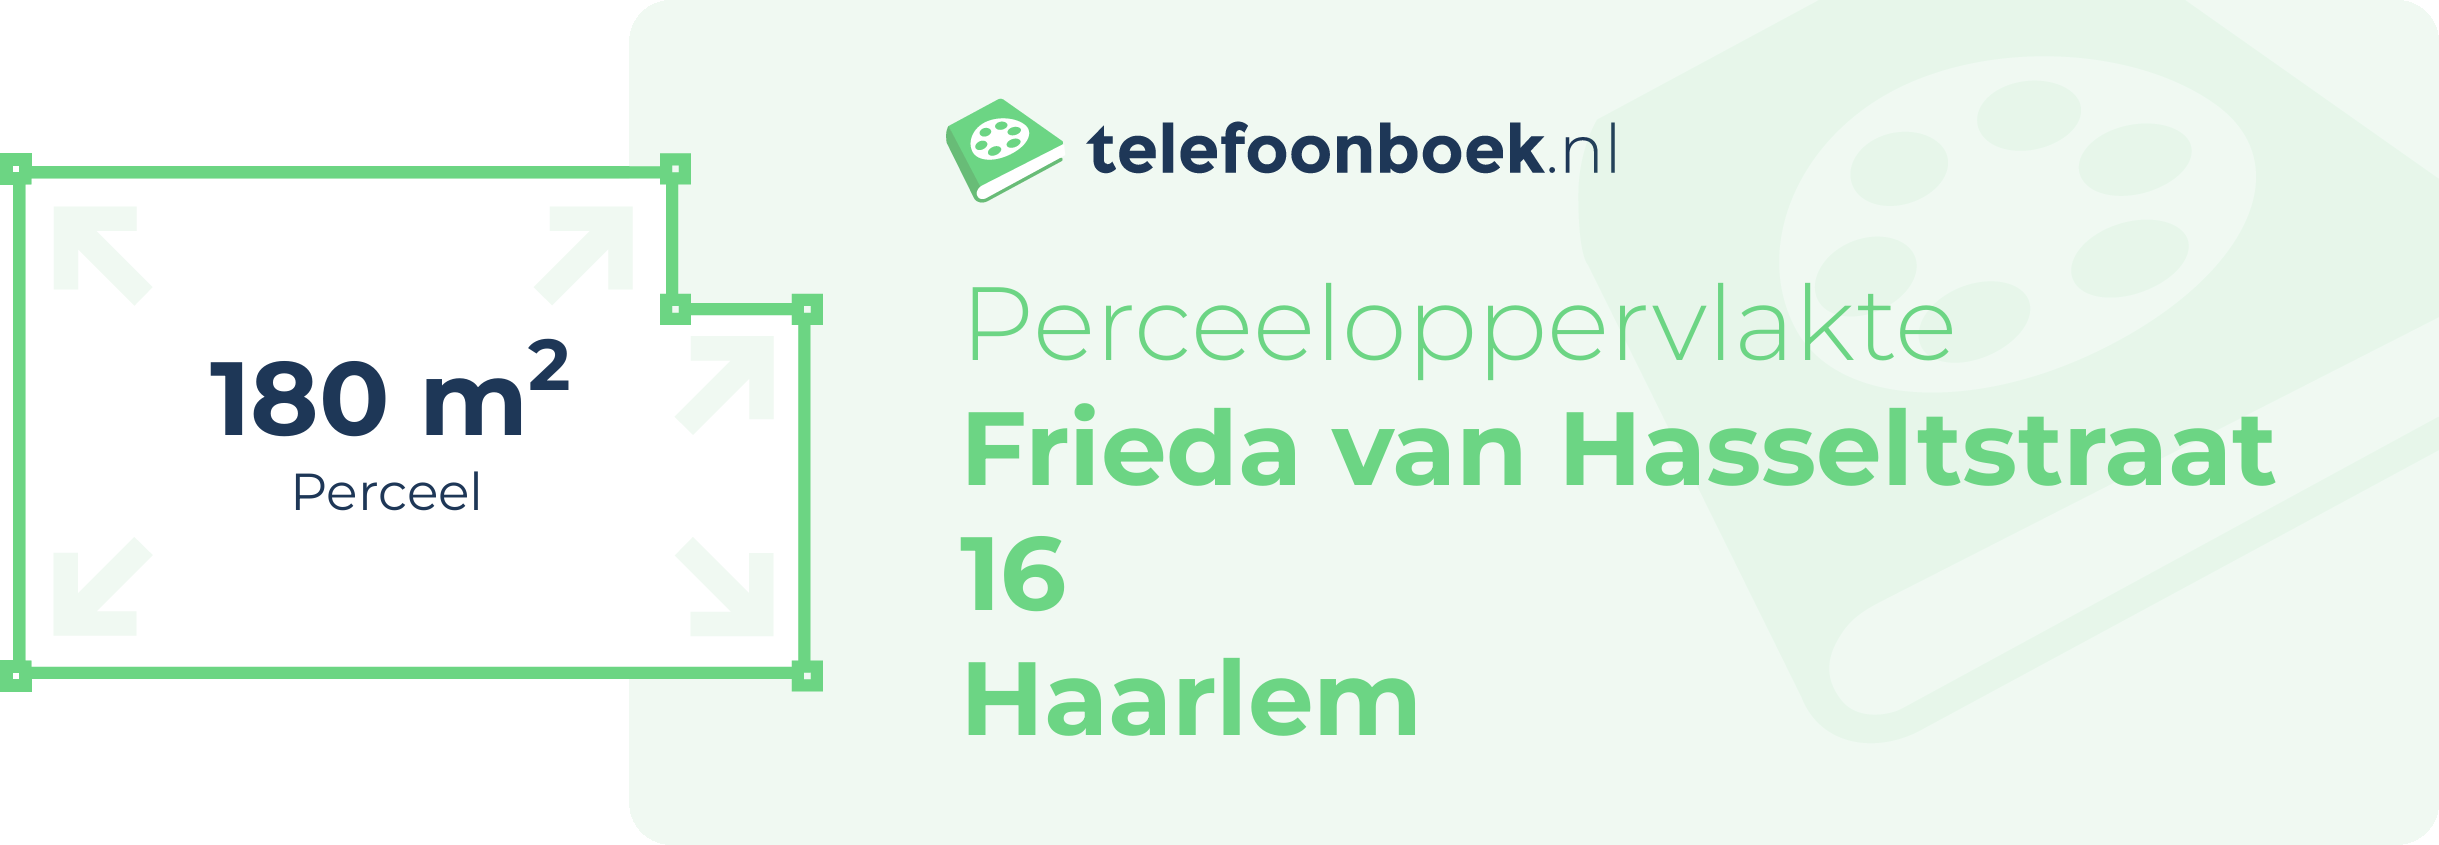 Perceeloppervlakte Frieda Van Hasseltstraat 16 Haarlem